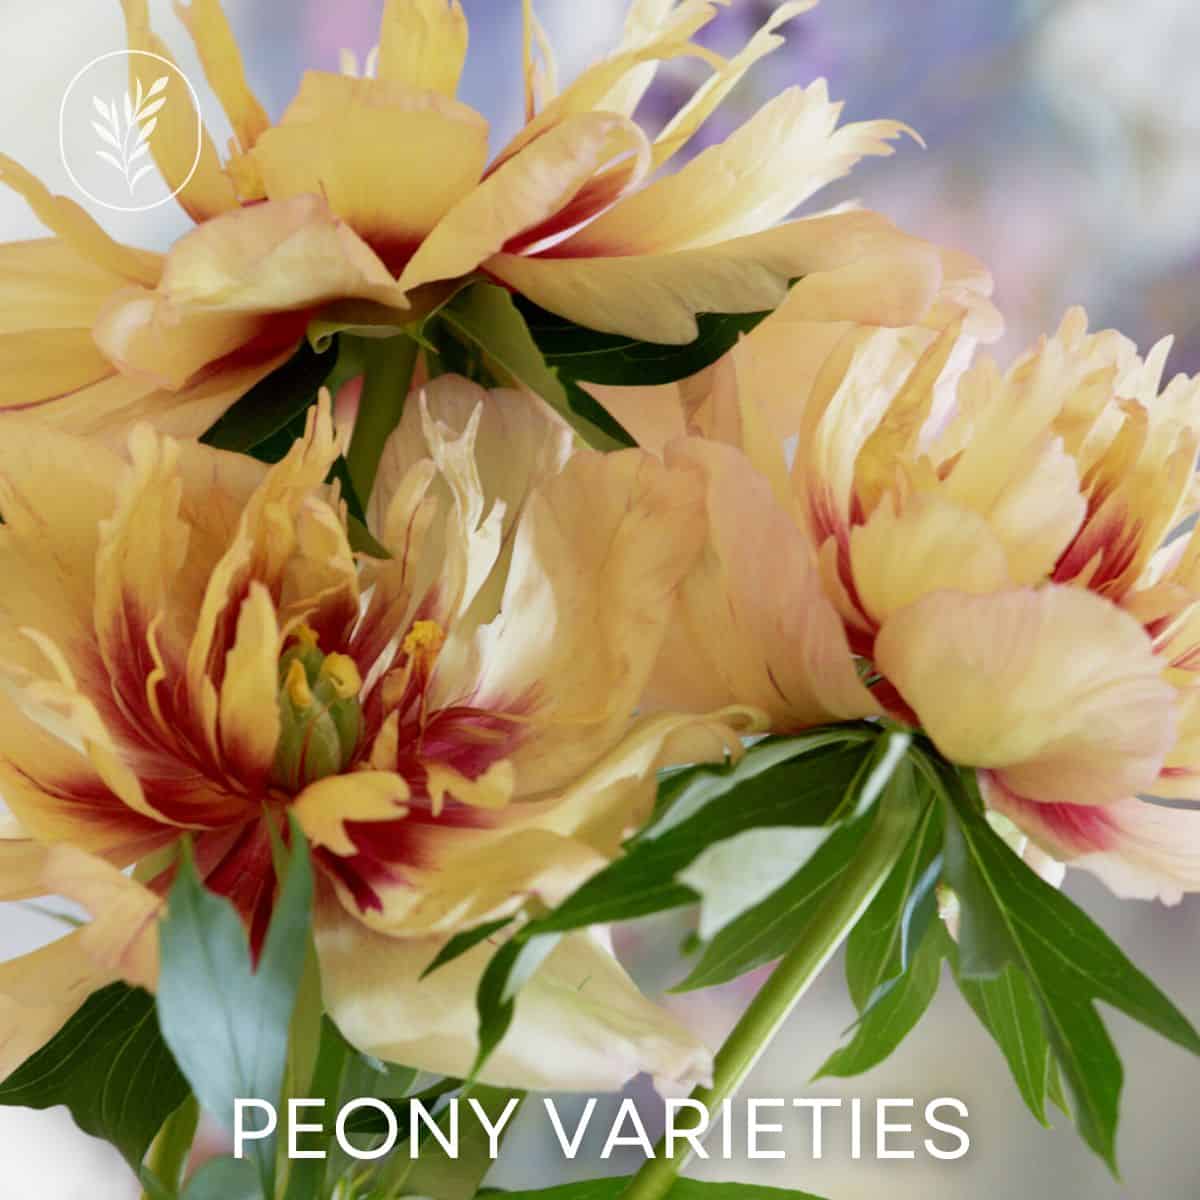 Peony varieties via @home4theharvest